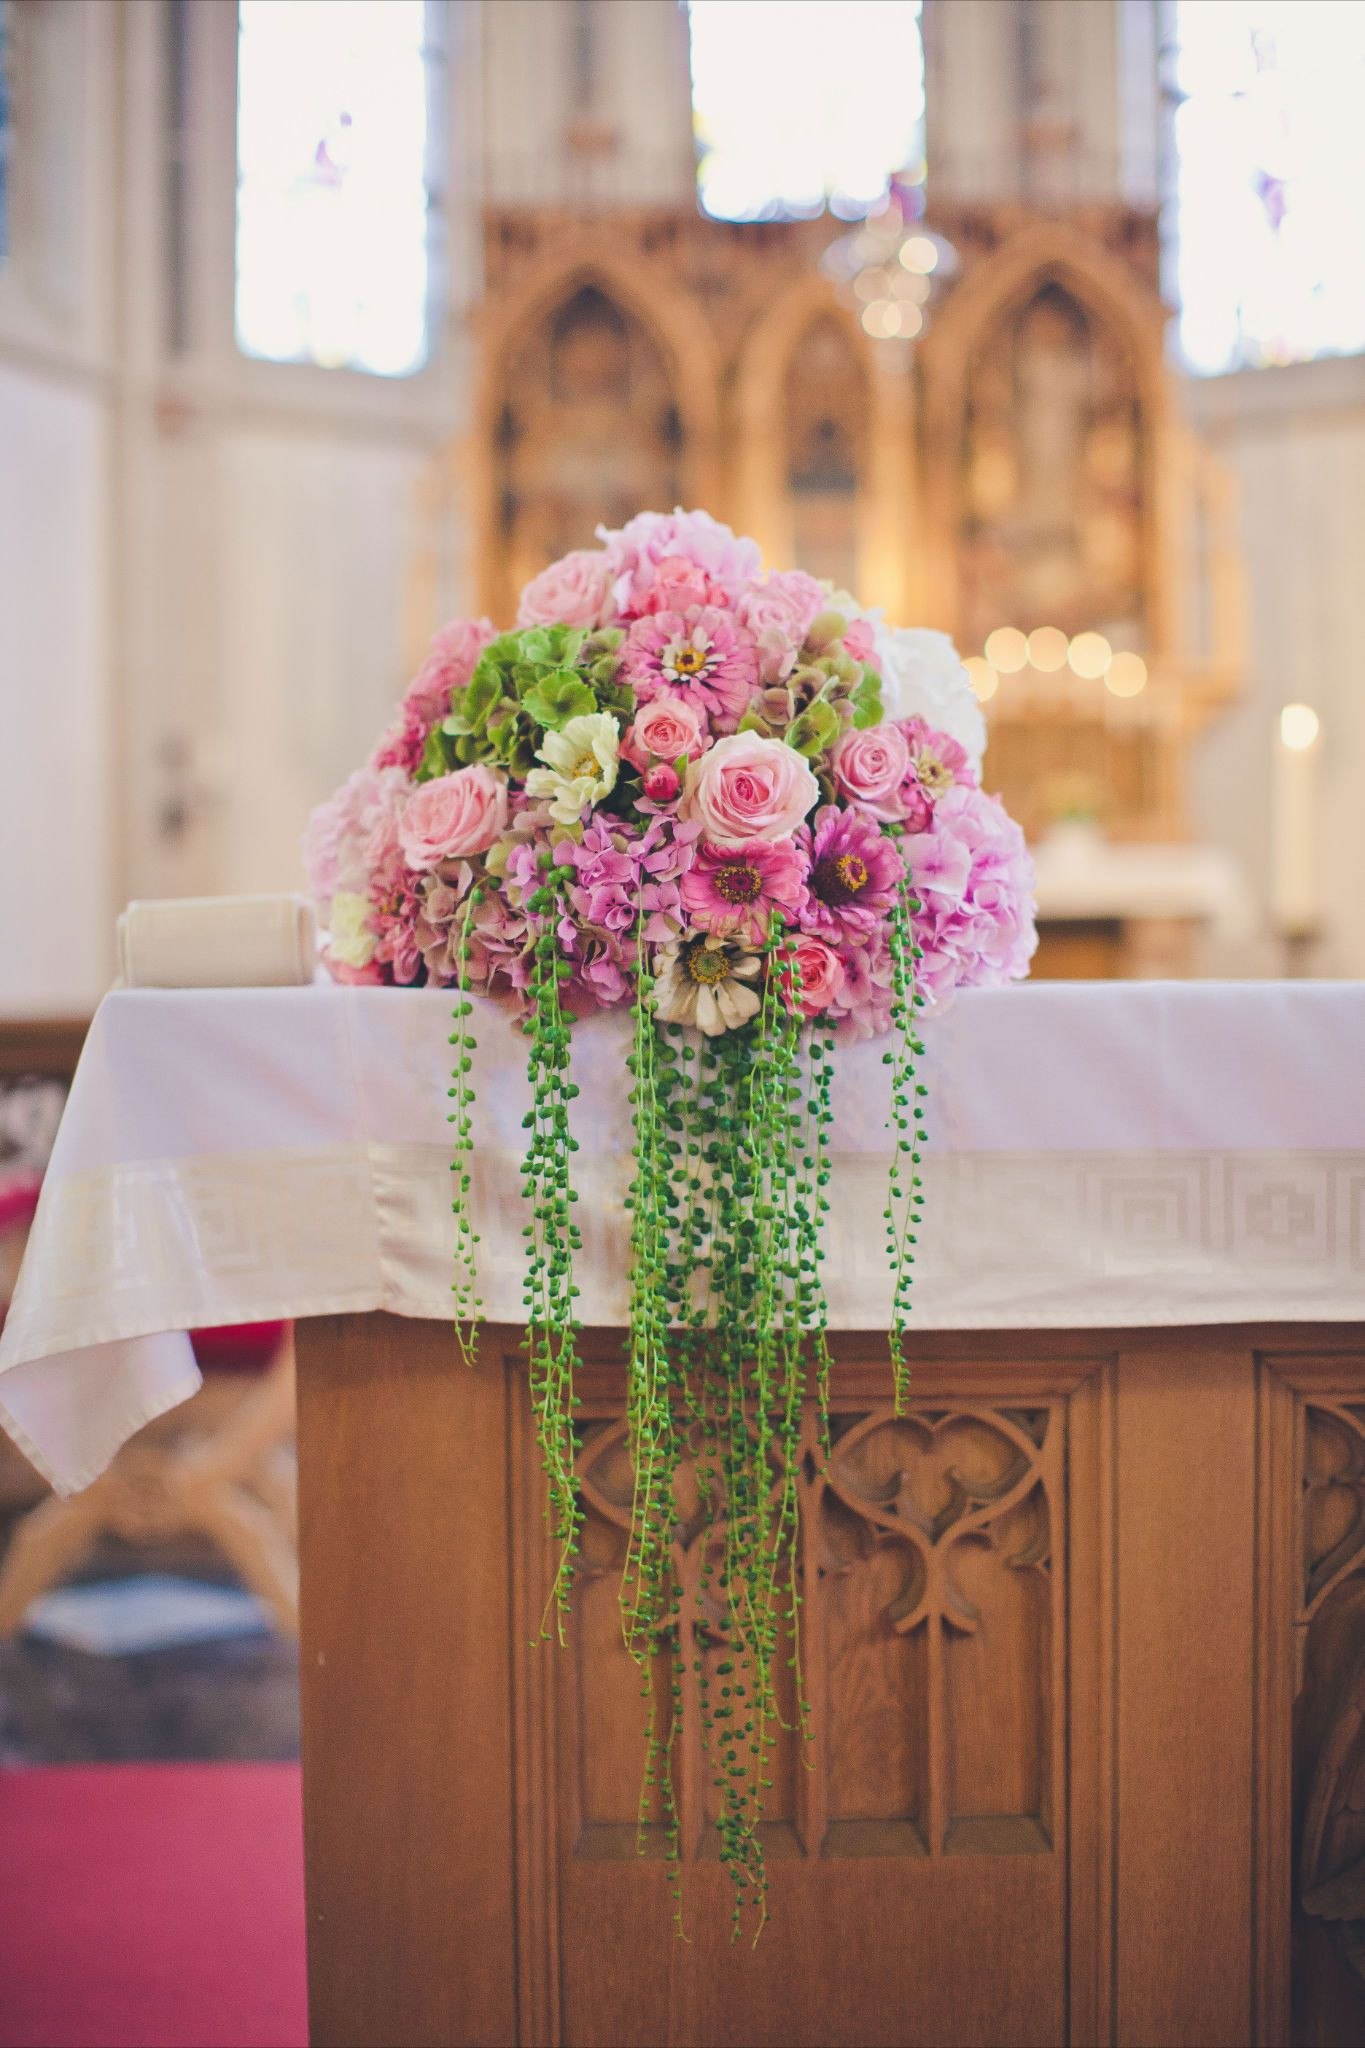 Blumenschmuck Kirche Hochzeit
 Altargesteck Hochzeit in 2019